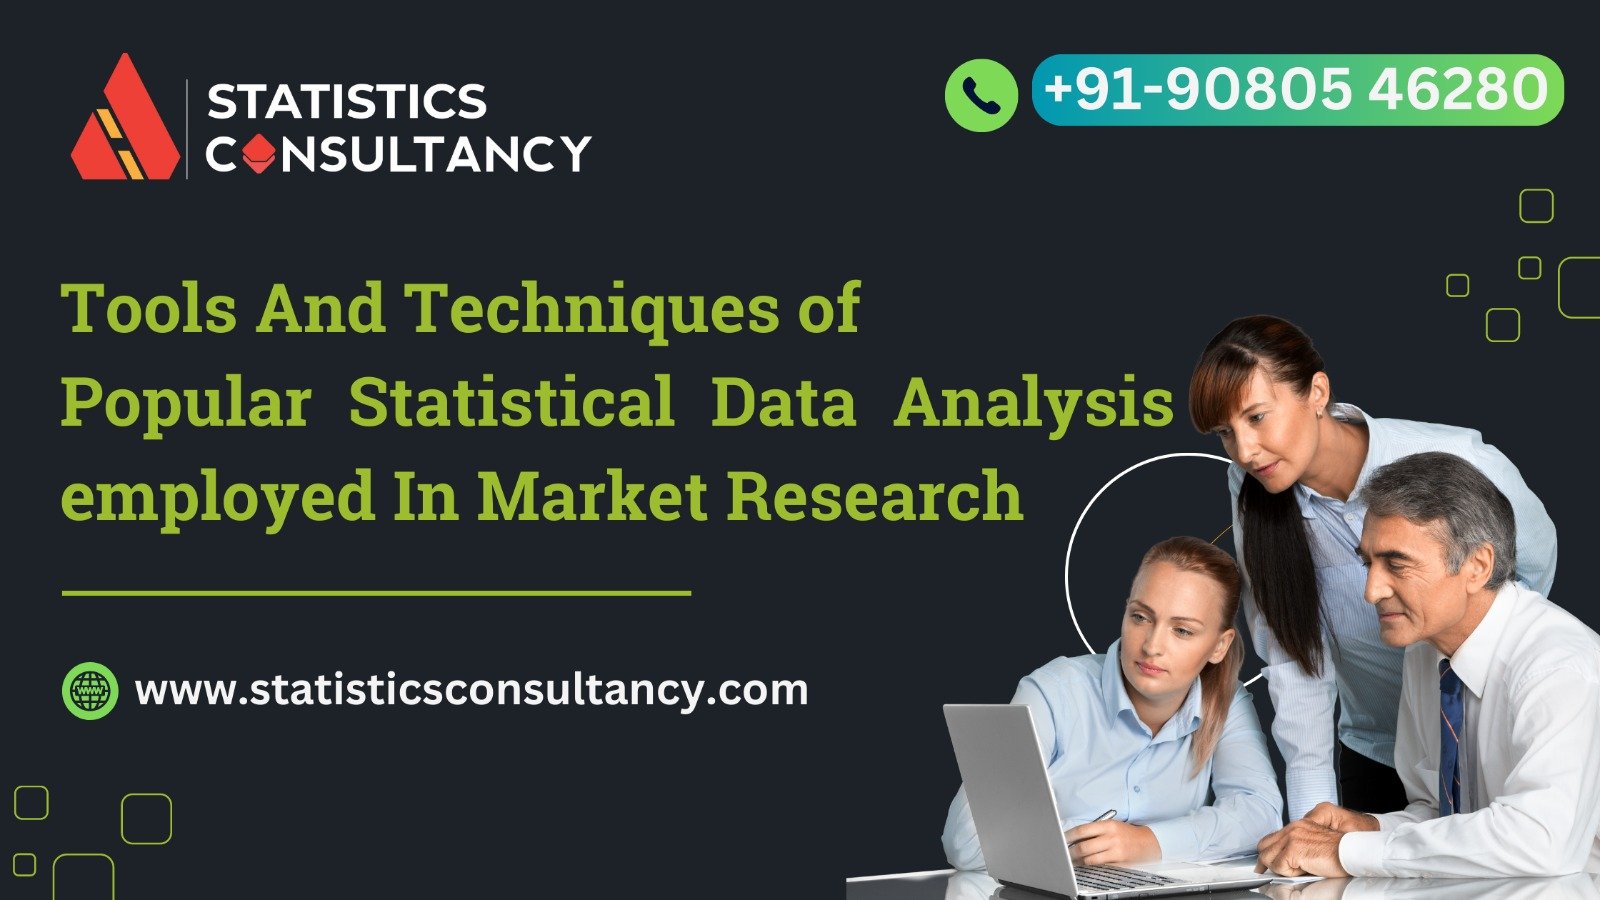 Statistics consultancy